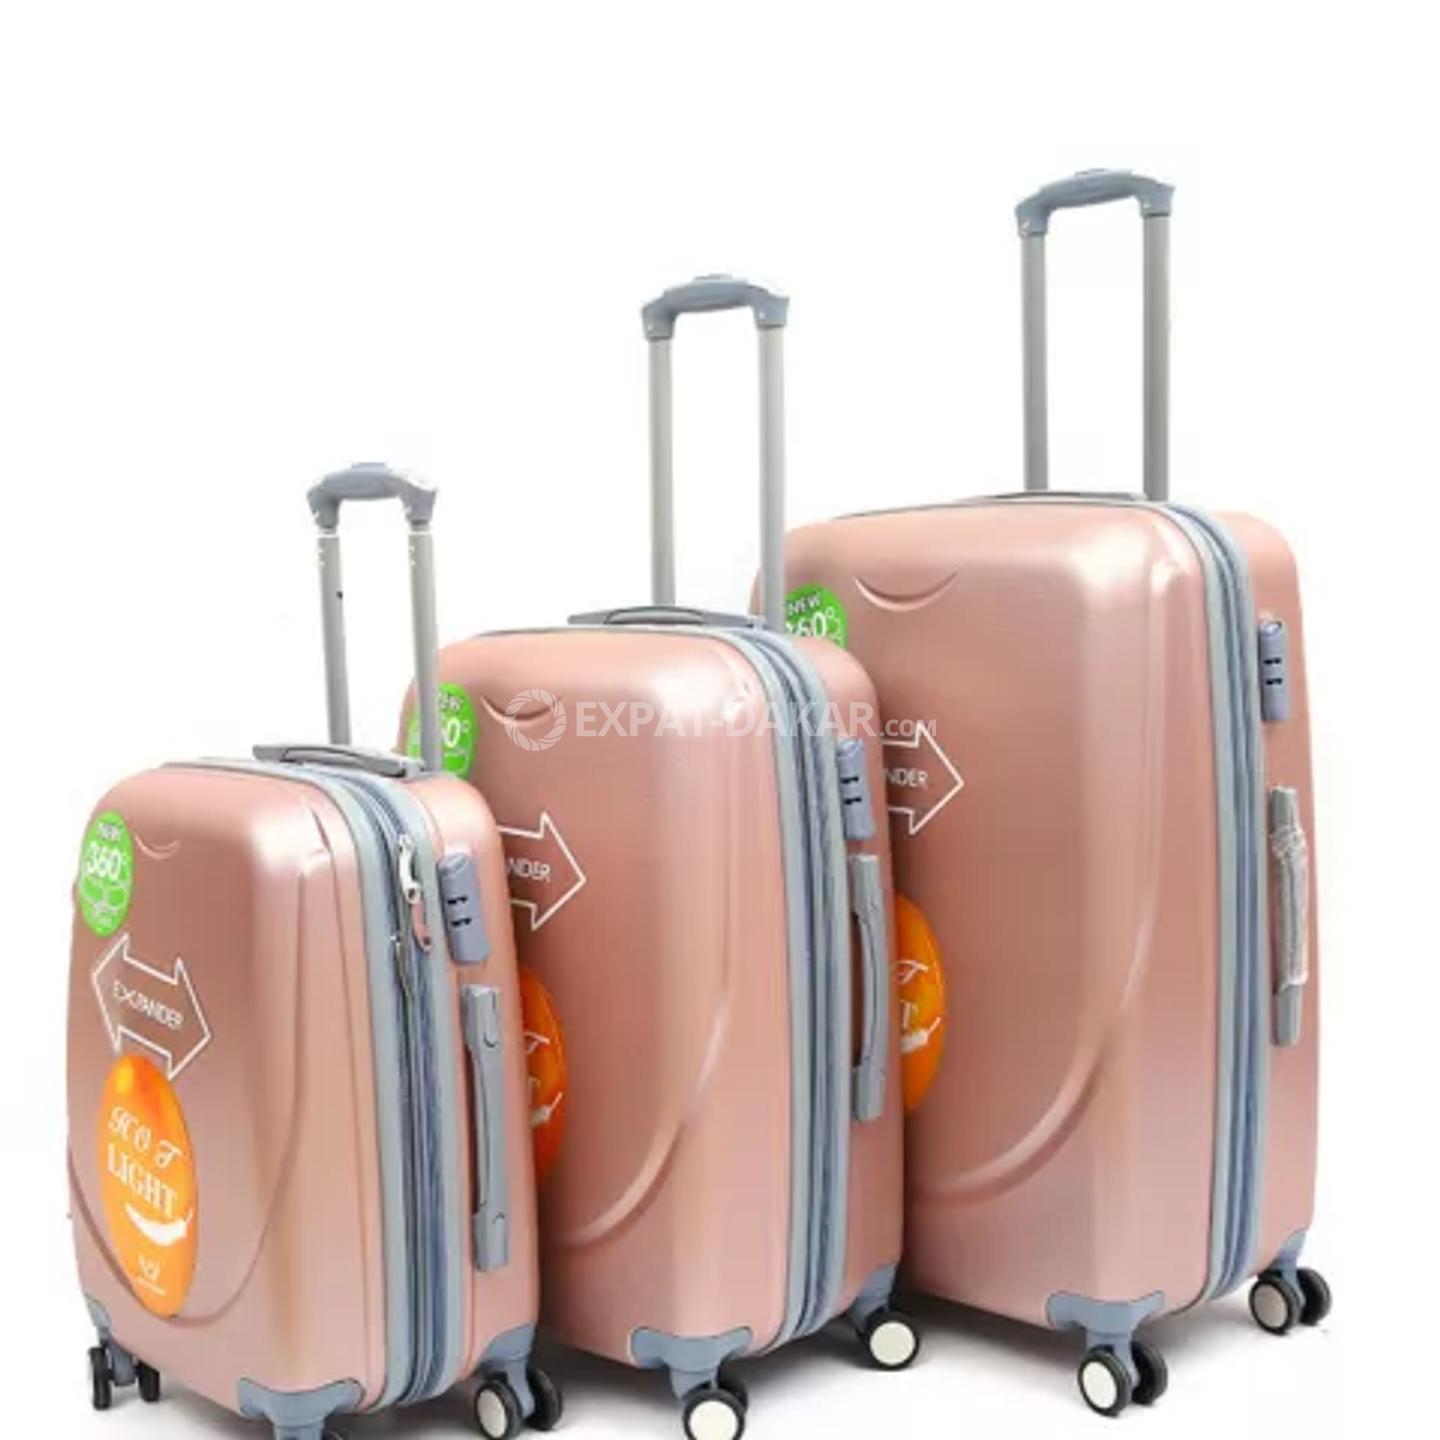 valise de voyage dakar